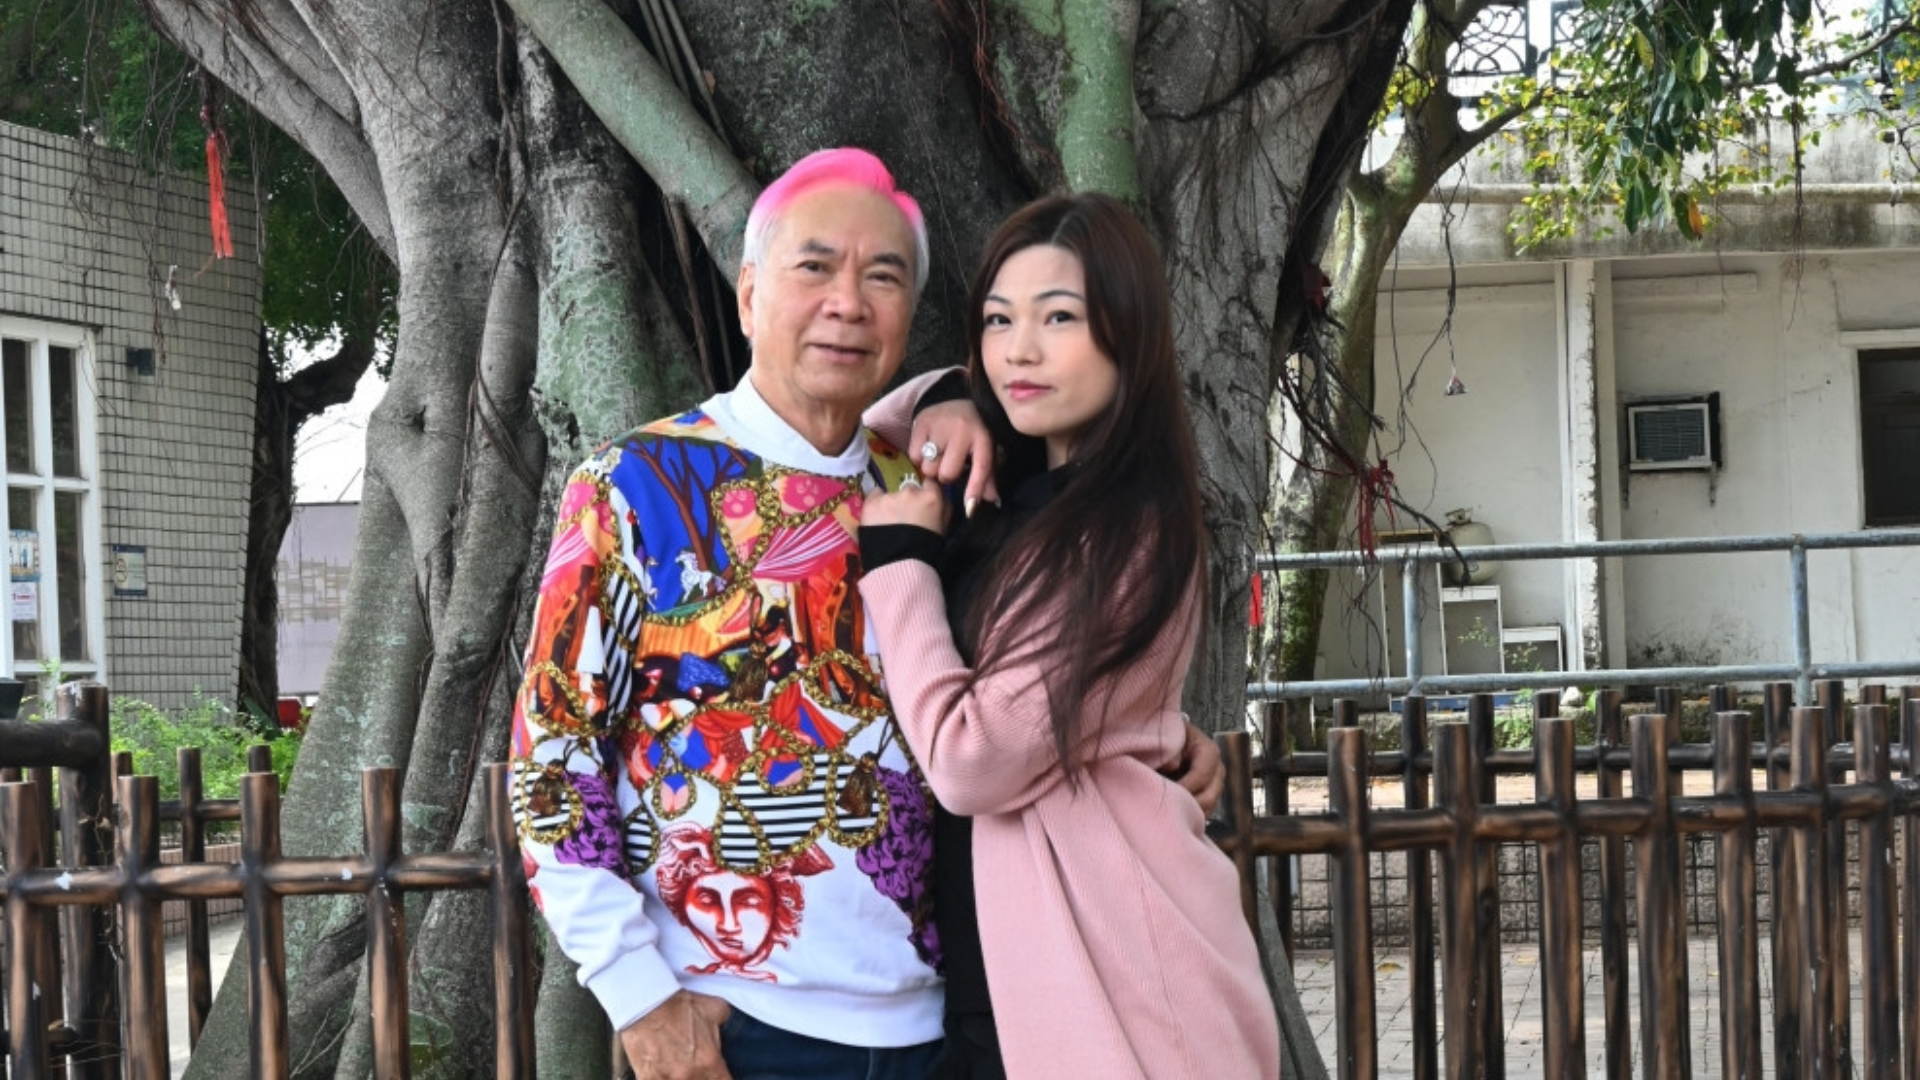 Lee Lung Kei’s fiancée is in jail